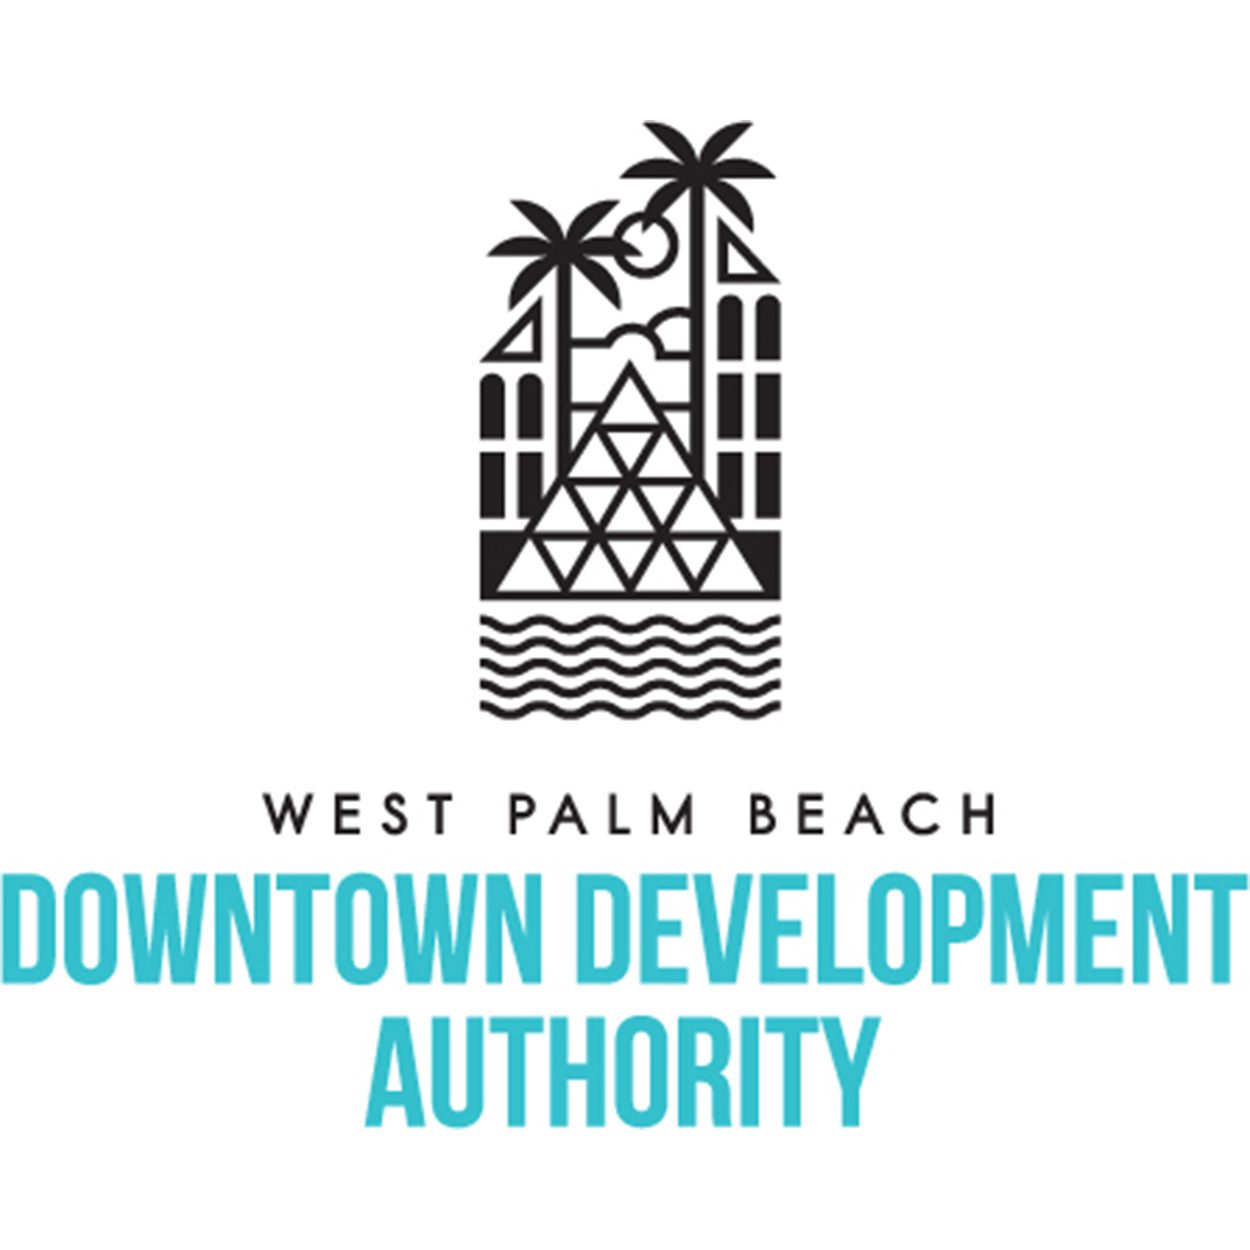 West Palm Beach Downtown Development Authority logo